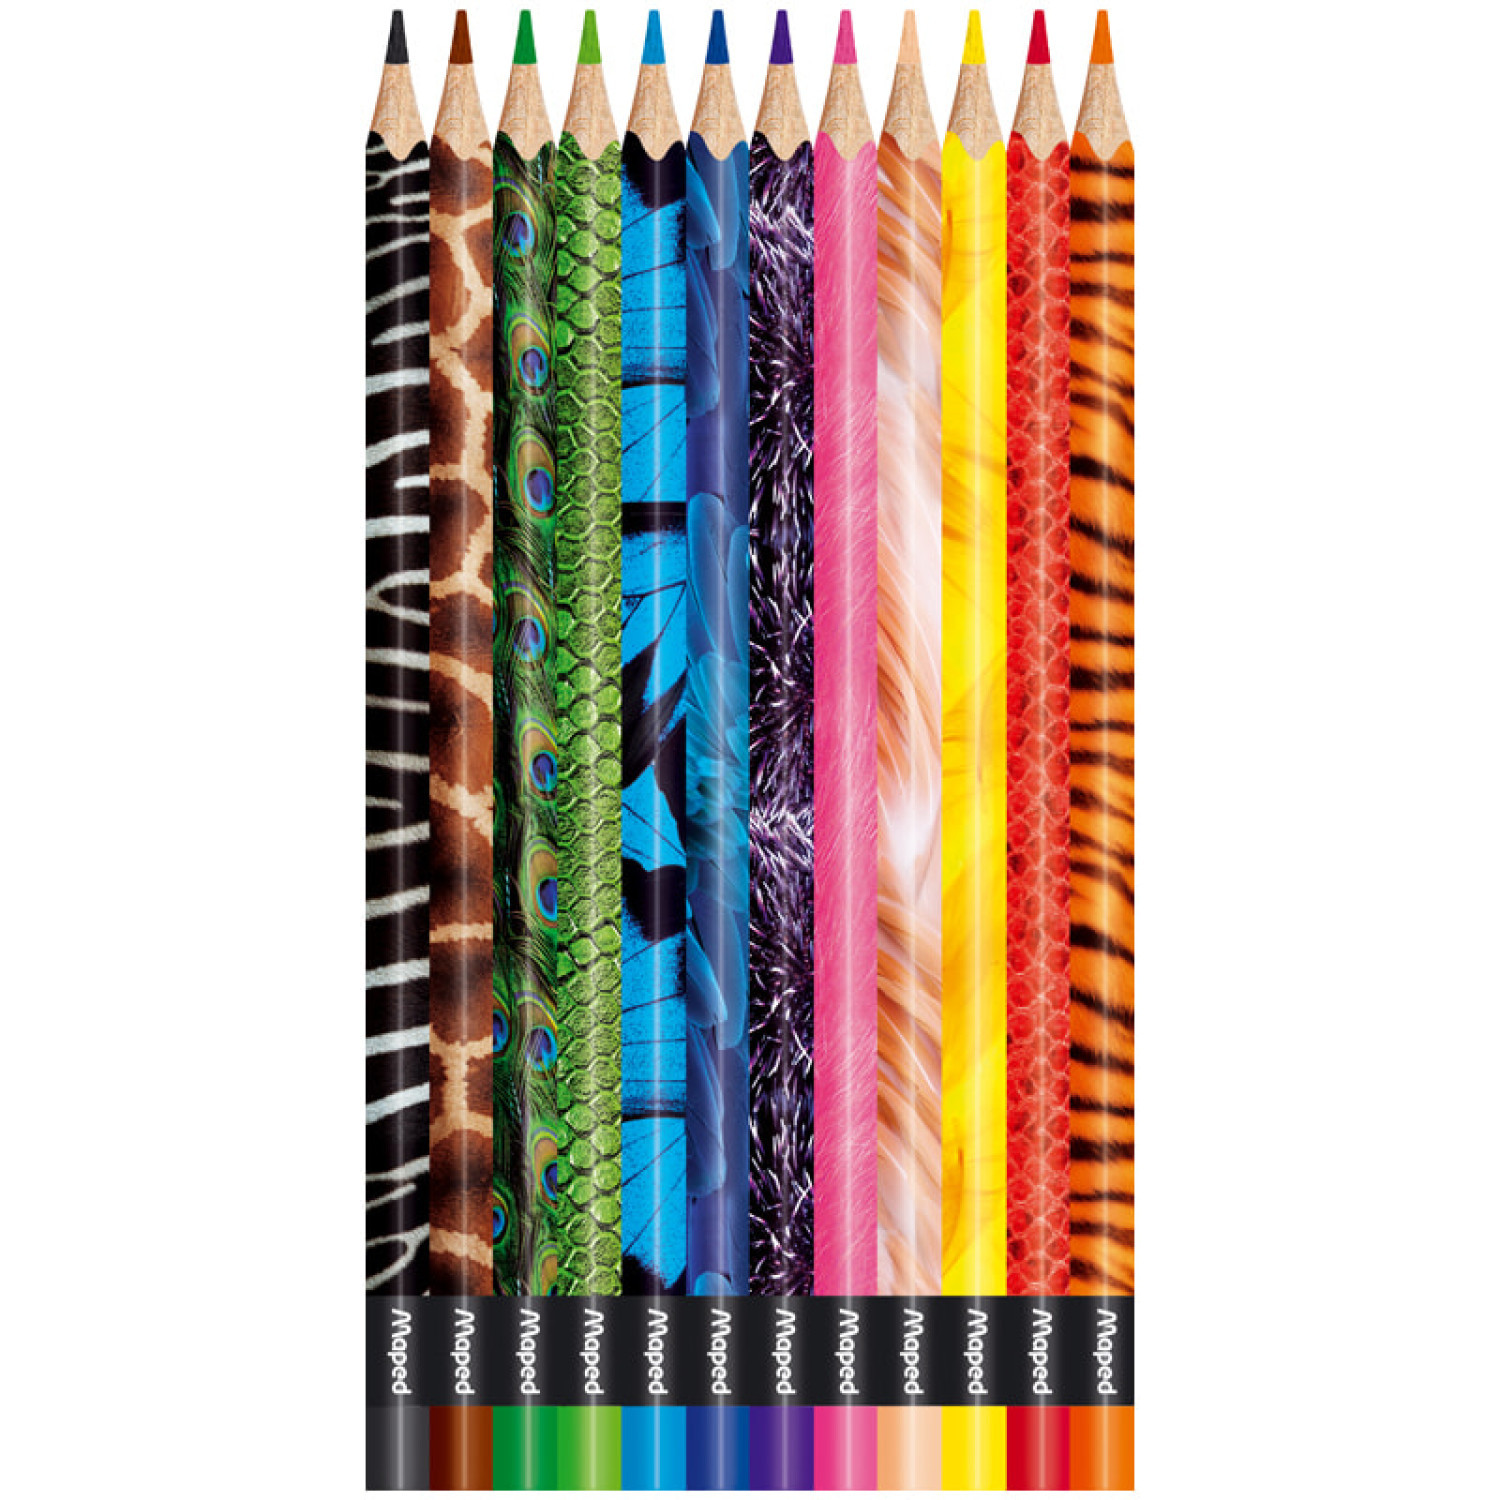 Цветни моливи Maped Color Peps Animals, 12 цвята